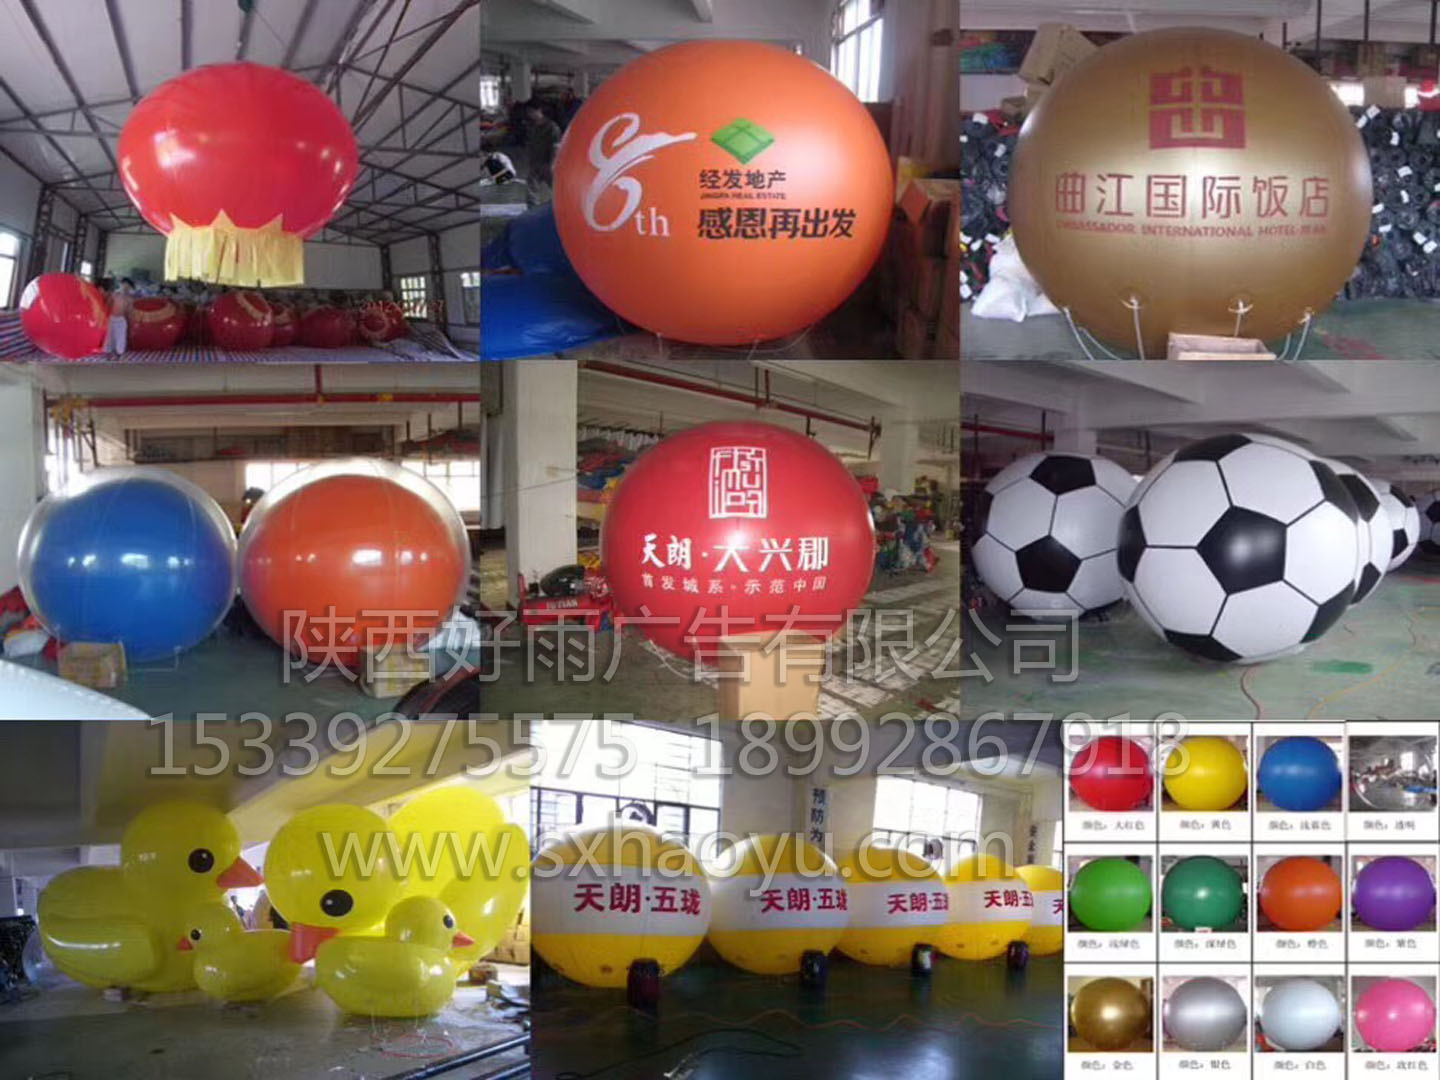 西安市供应西安发光灯光气模， 发光气球厂家供应西安发光灯光气模， 发光气球